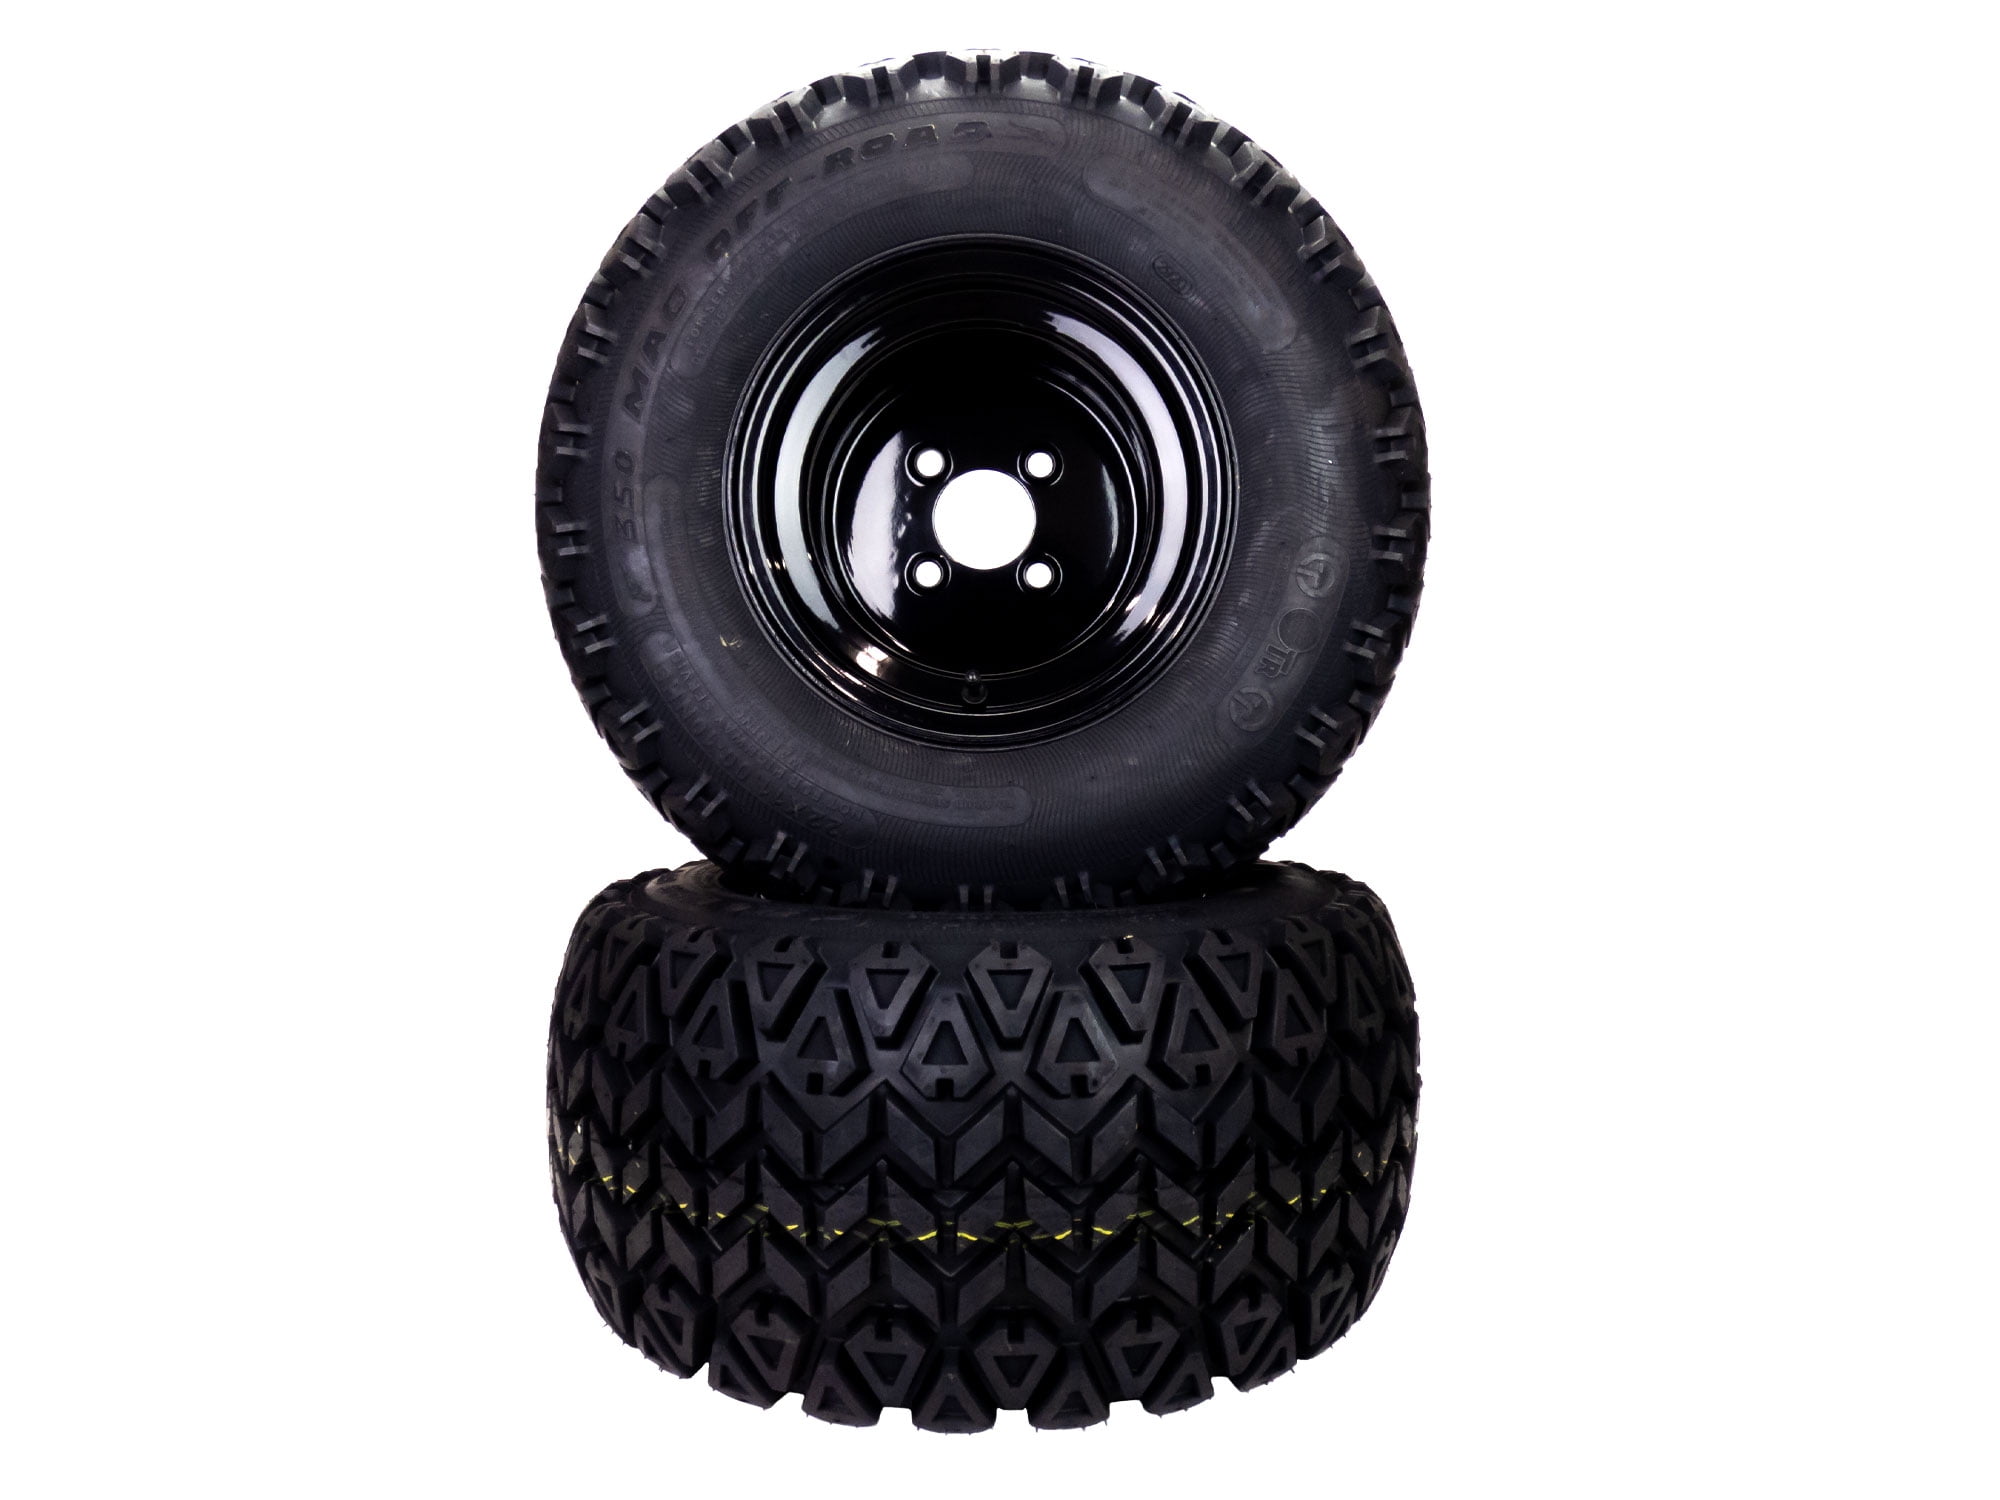 2) All Terrain Tire Assy 22x11.00-10 fits 52